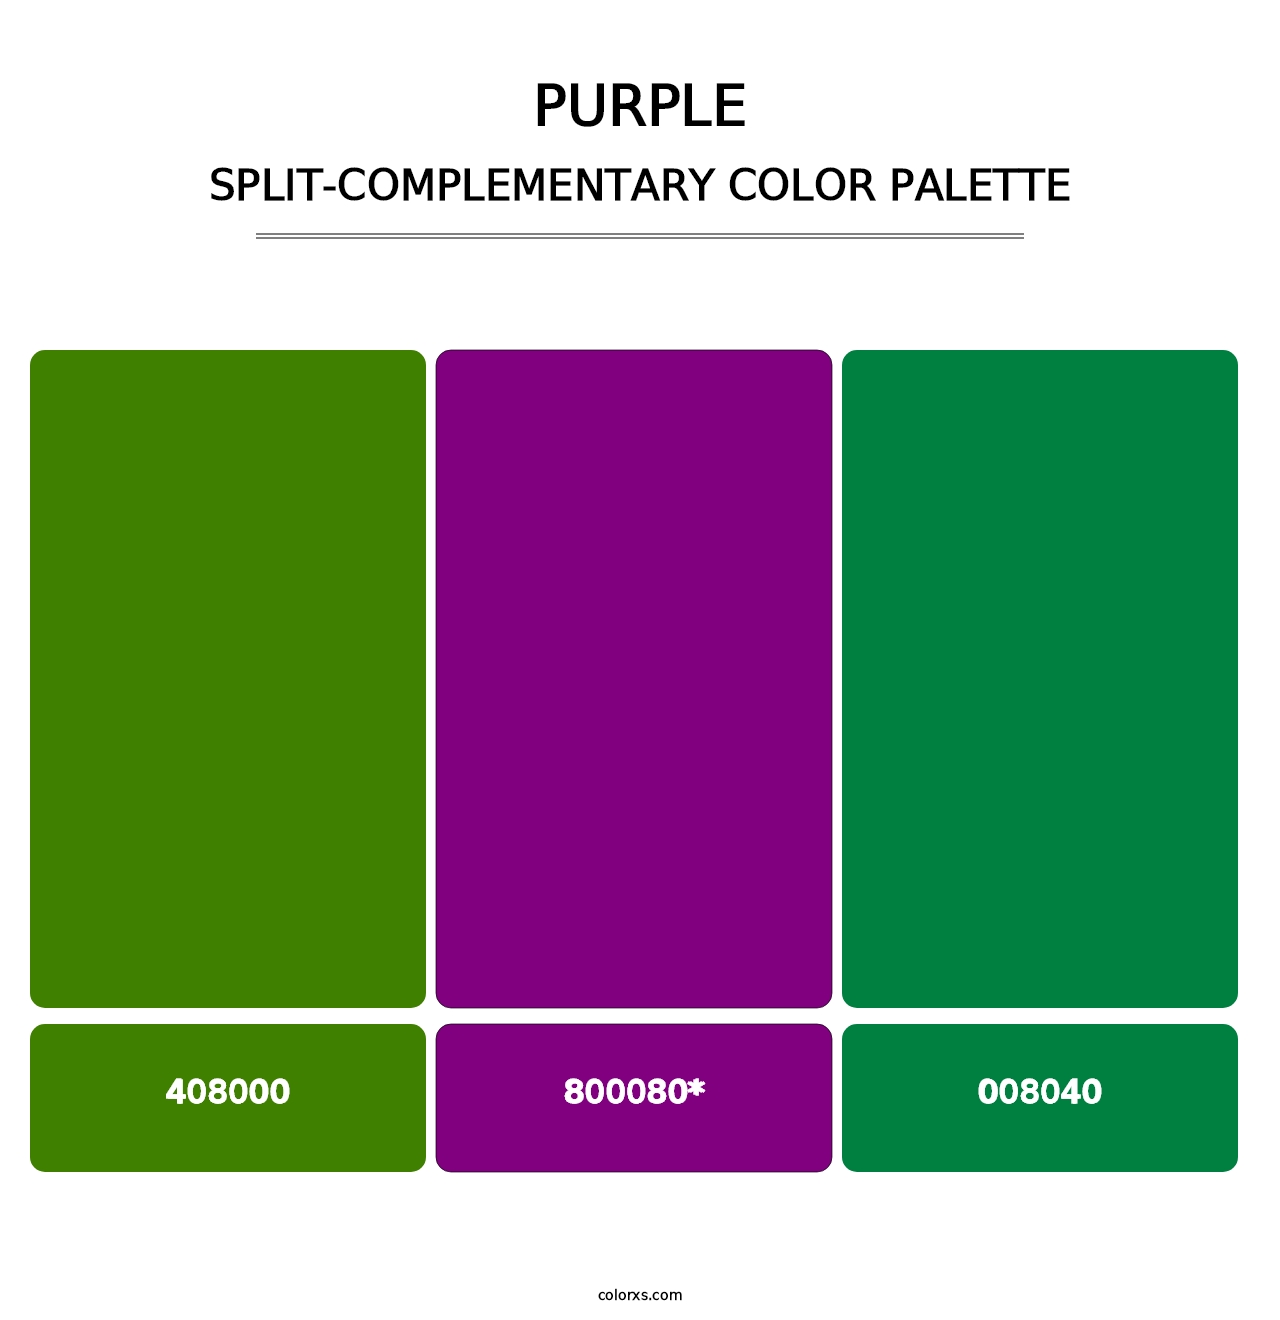 Purple - Split-Complementary Color Palette